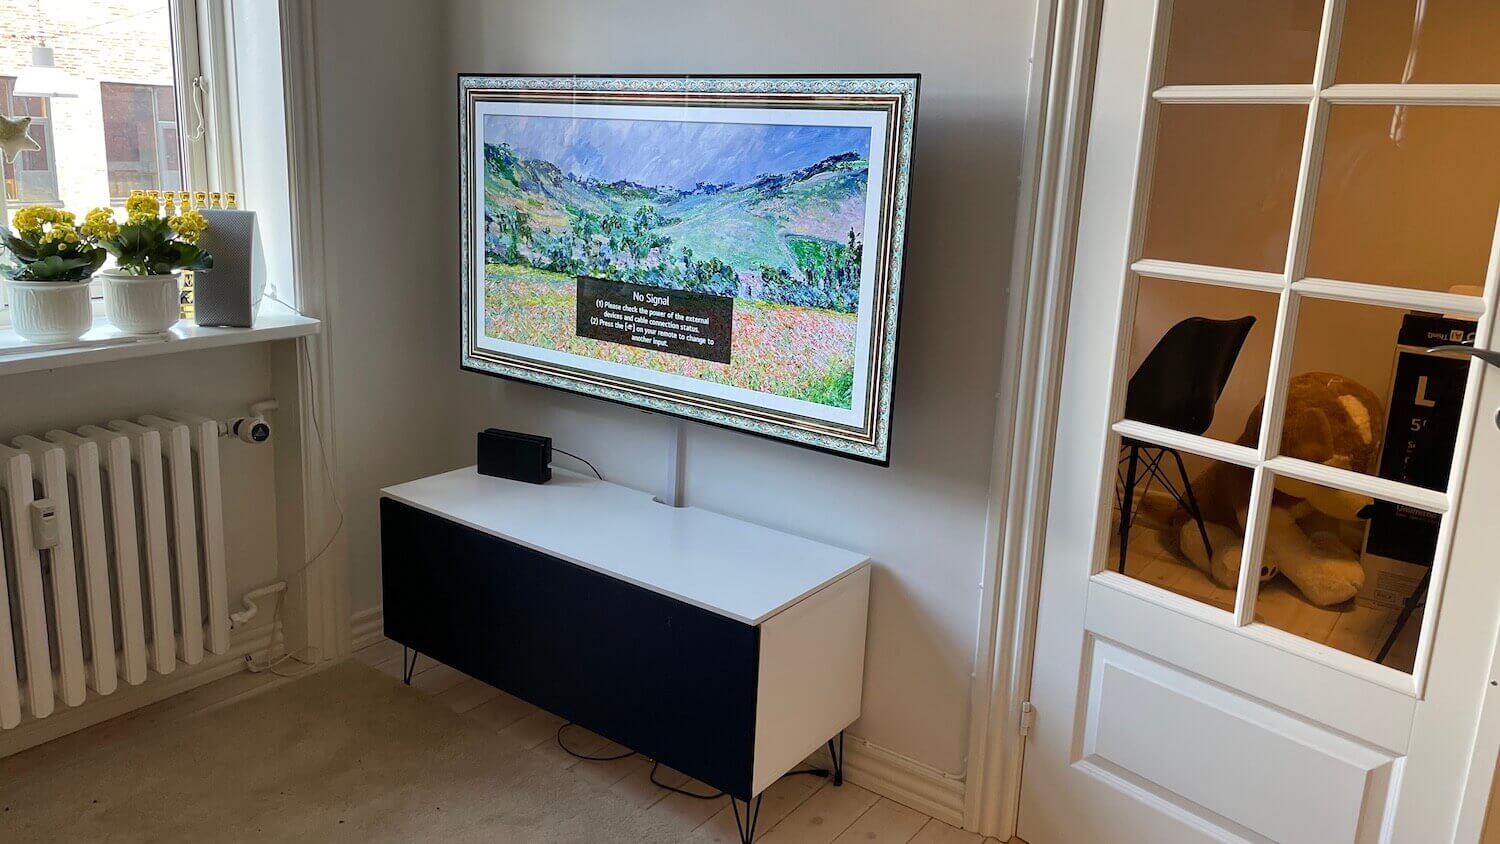 Væg-installation af 55 LG OLED TV på et vægbeslag med drejefunktion